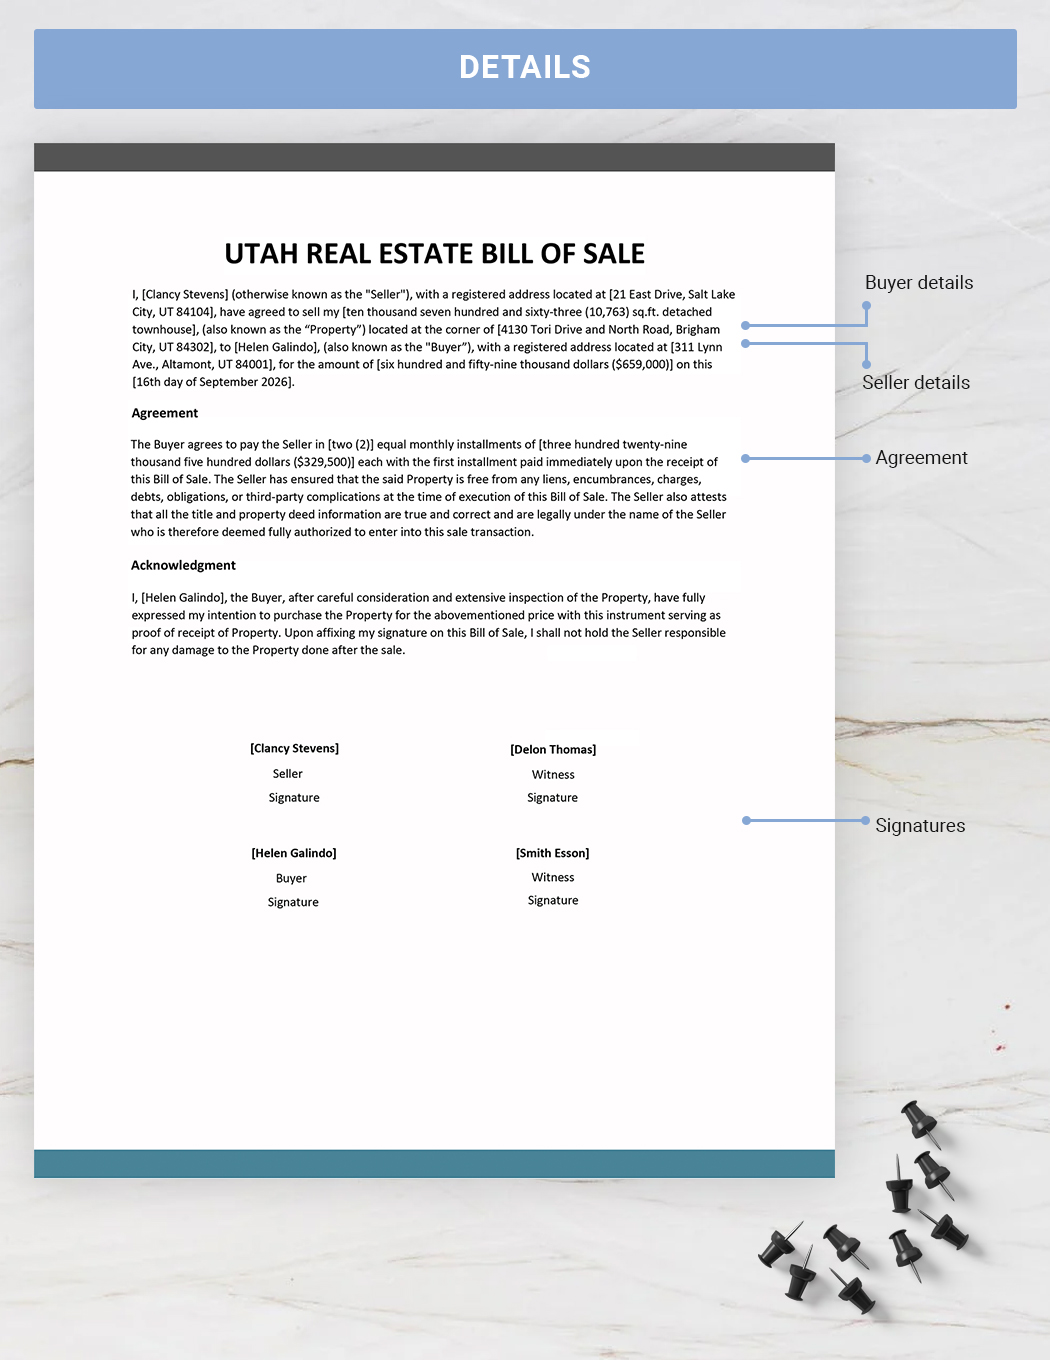 Utah Real Estate Bill of Sale Template